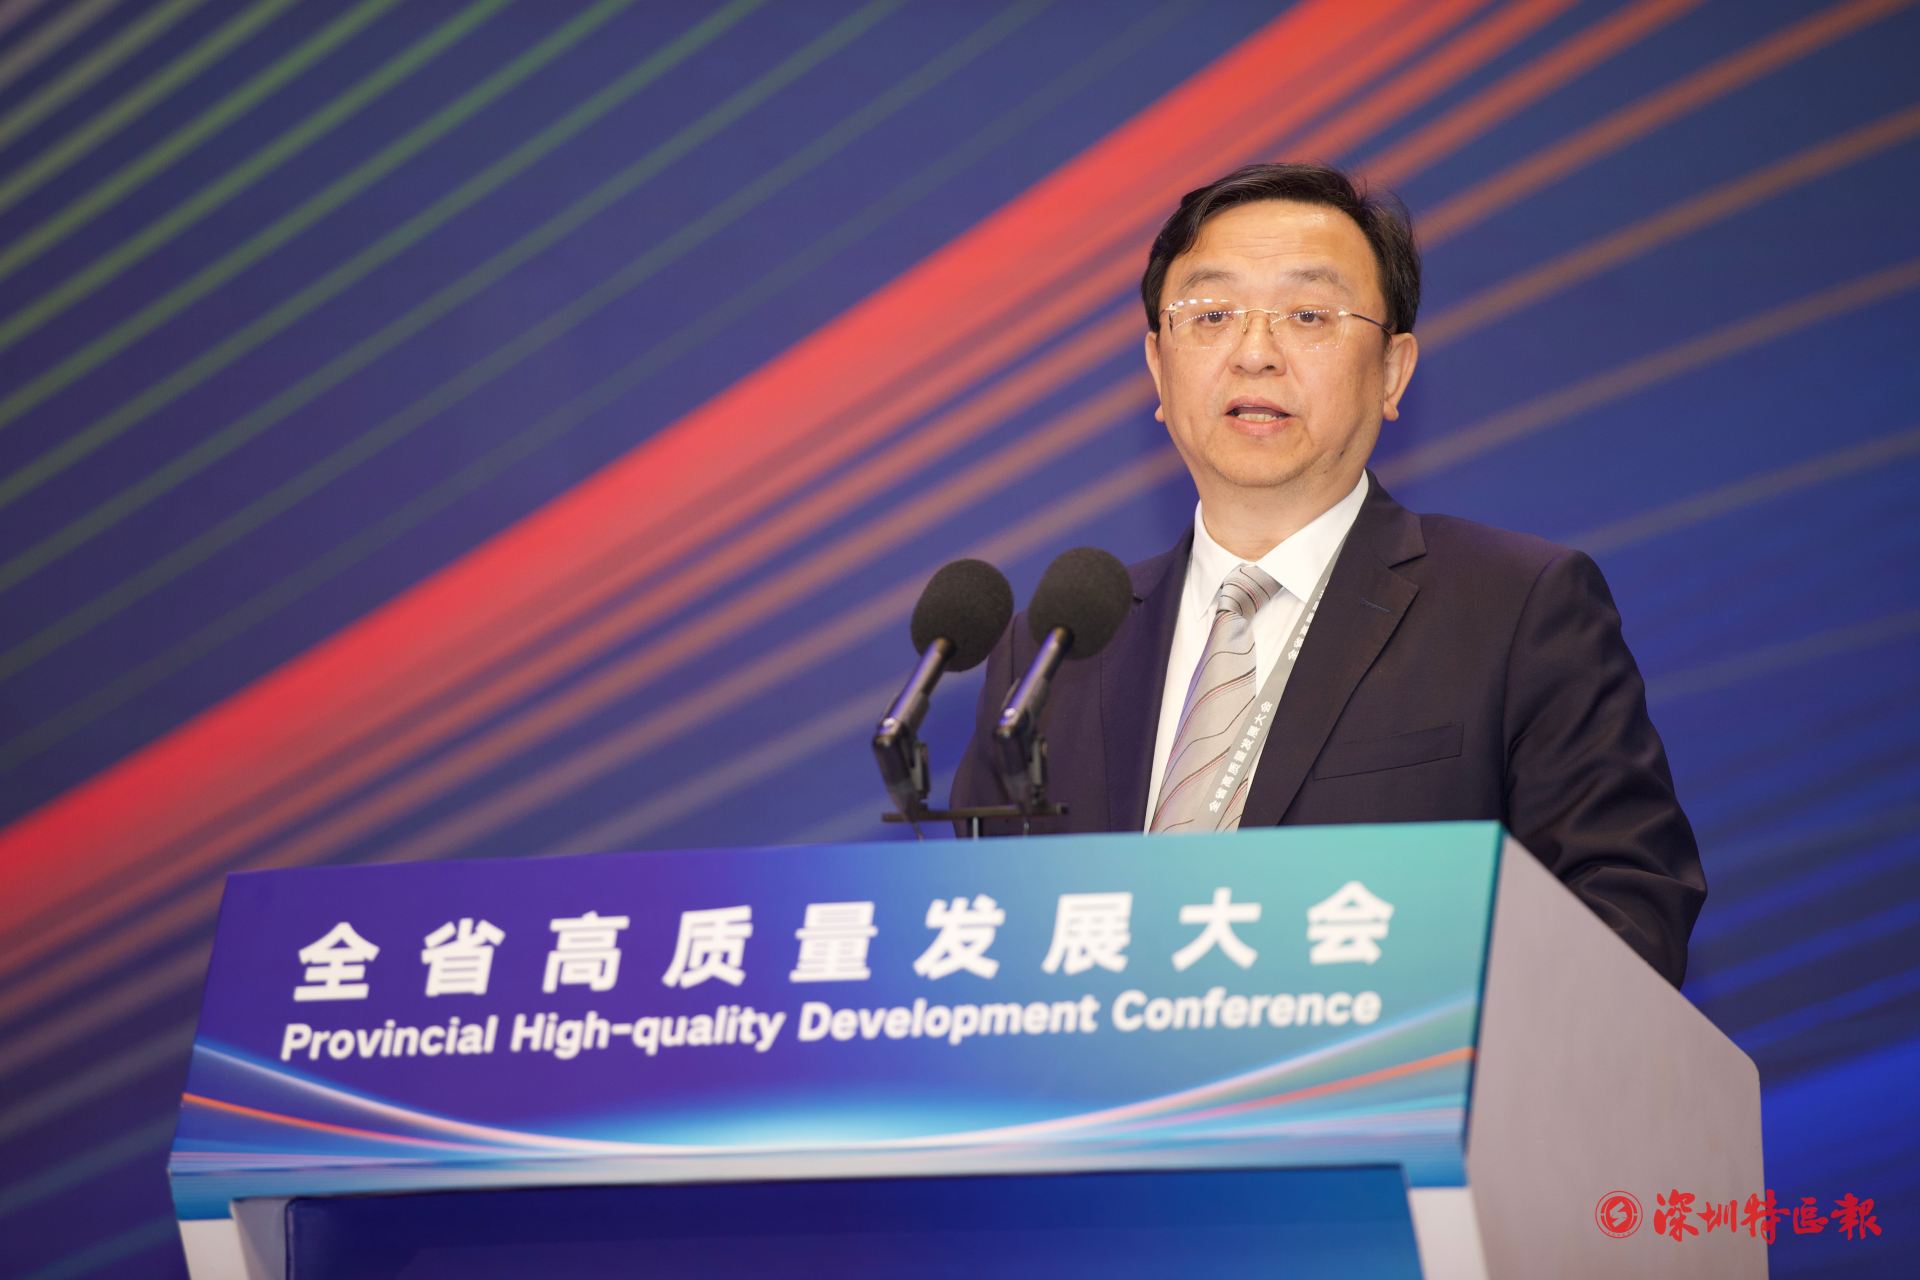 王传福：“没有广东及深圳的大力支持就没有比亚迪的今天” | 聚焦广东省高质量发展大会